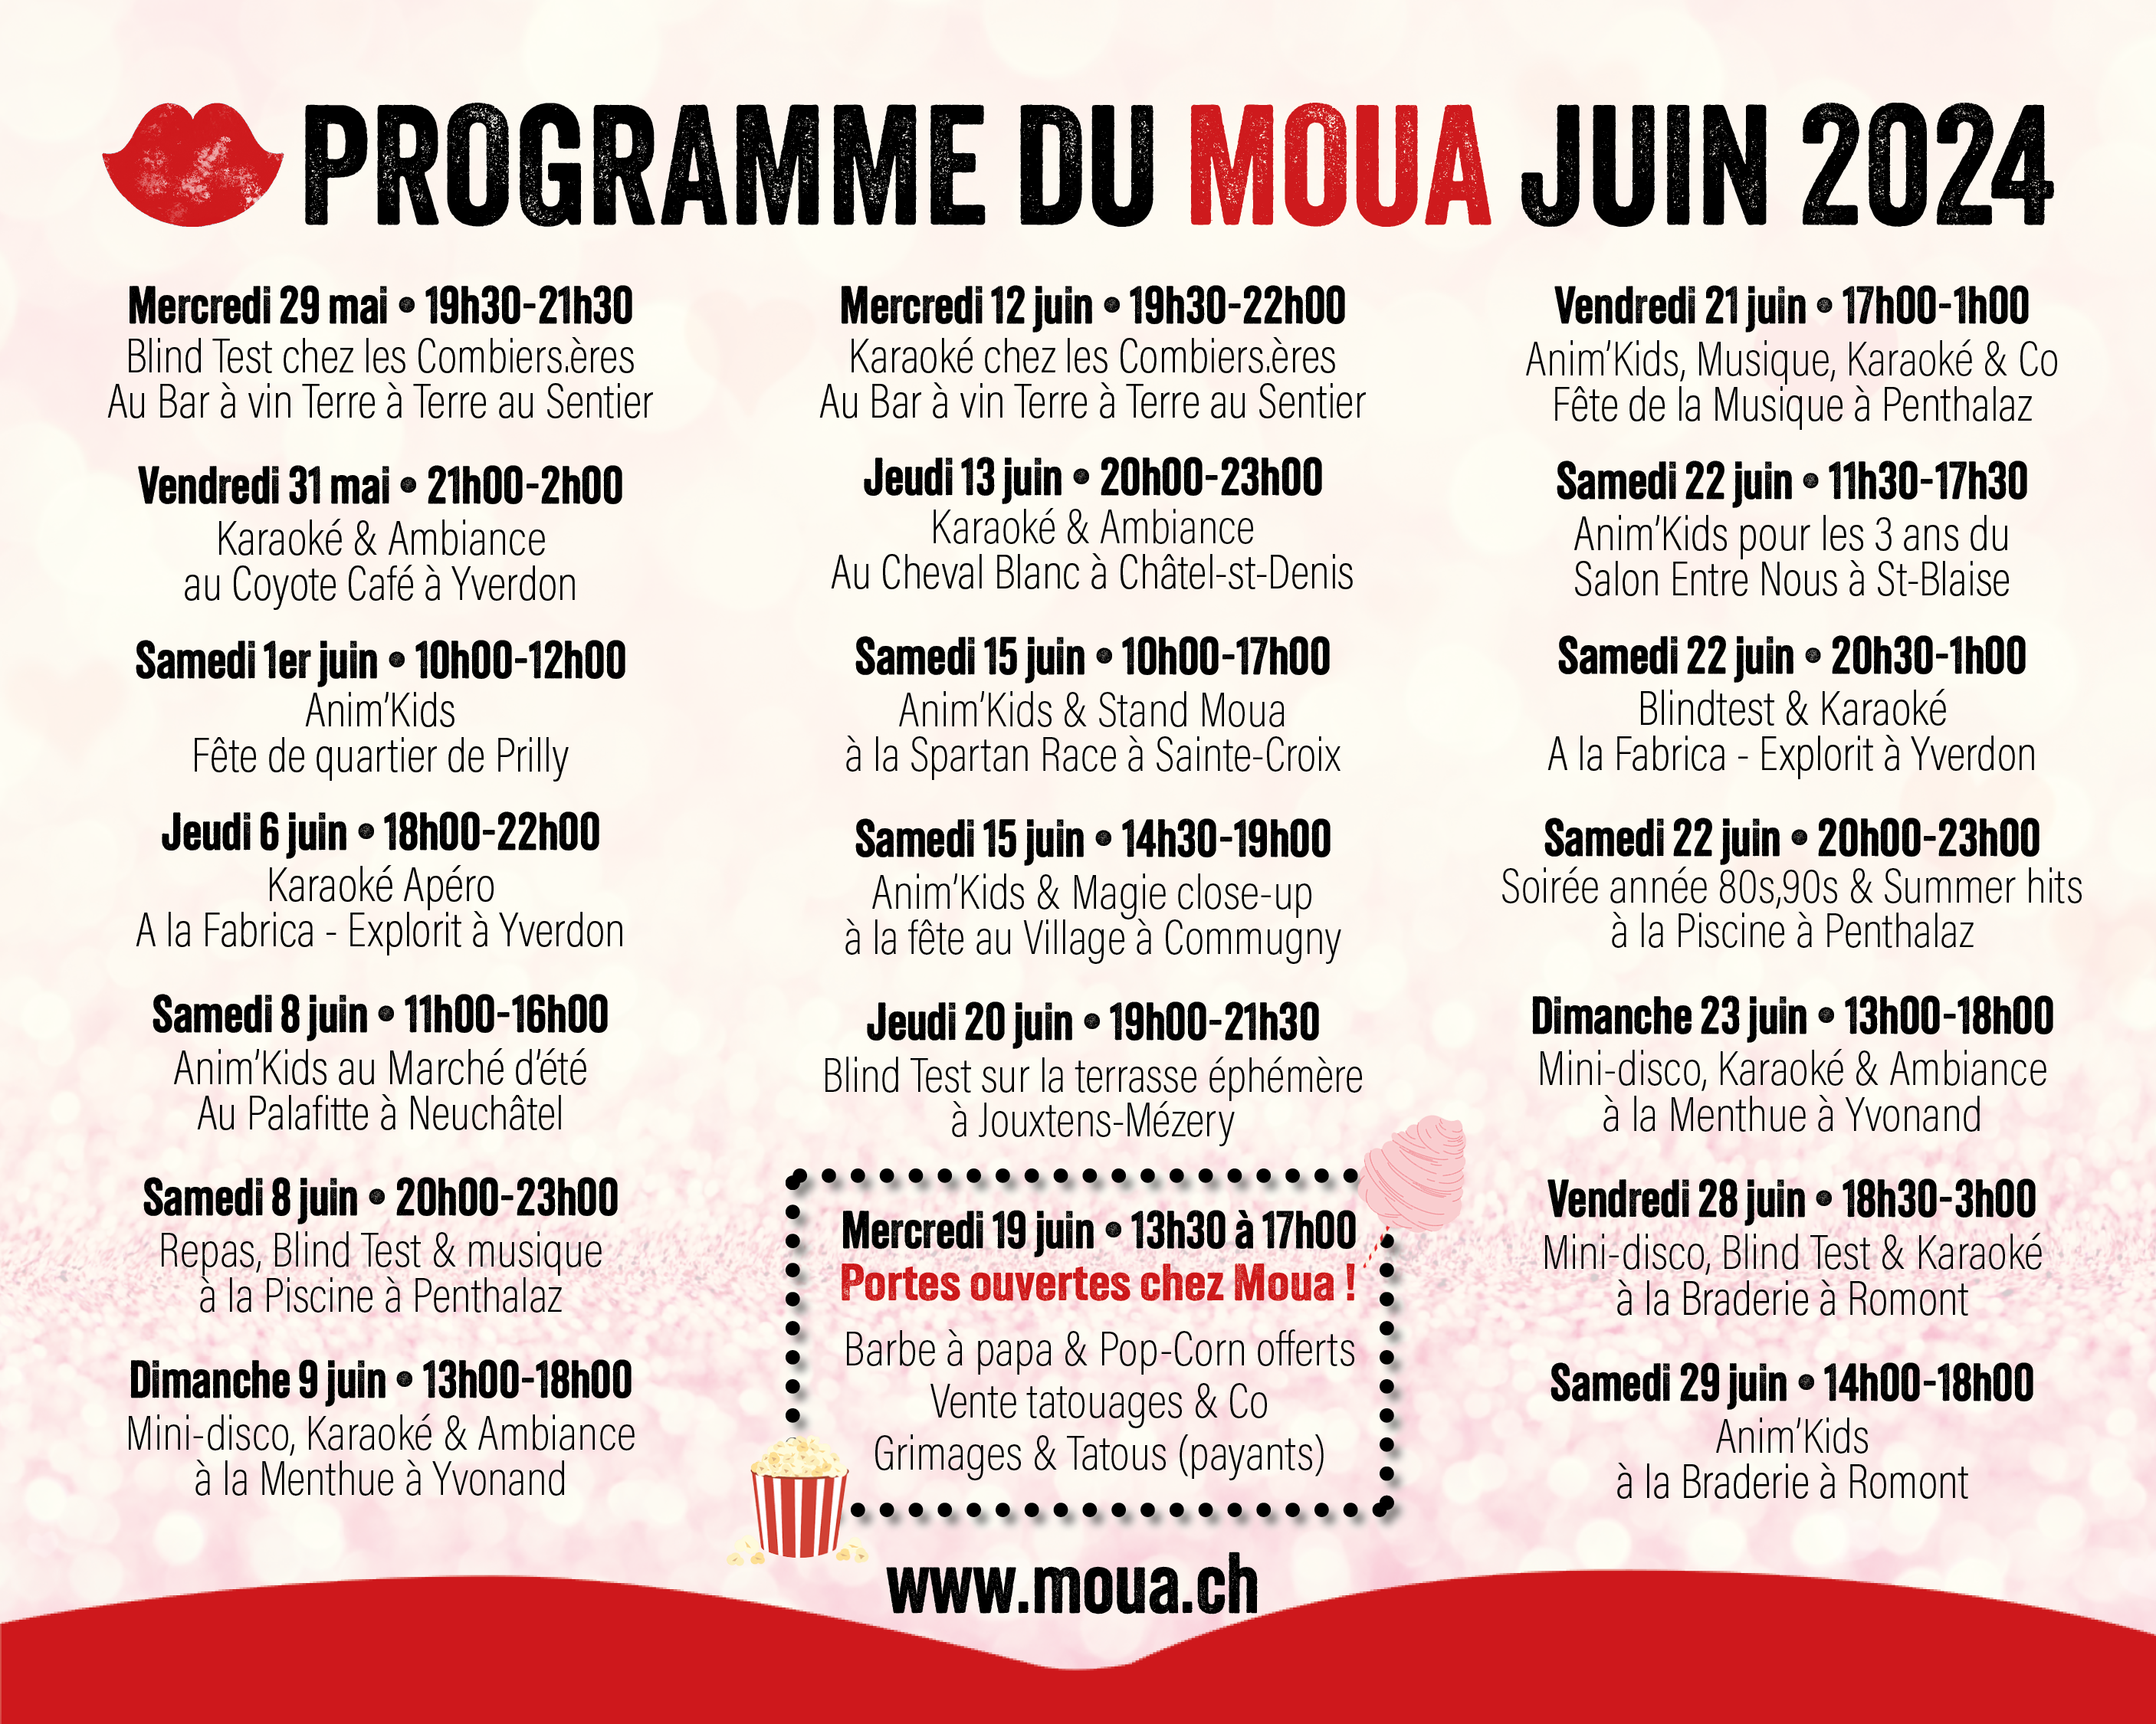 Programme des animations publiques Moua pour le mois de juin 2024